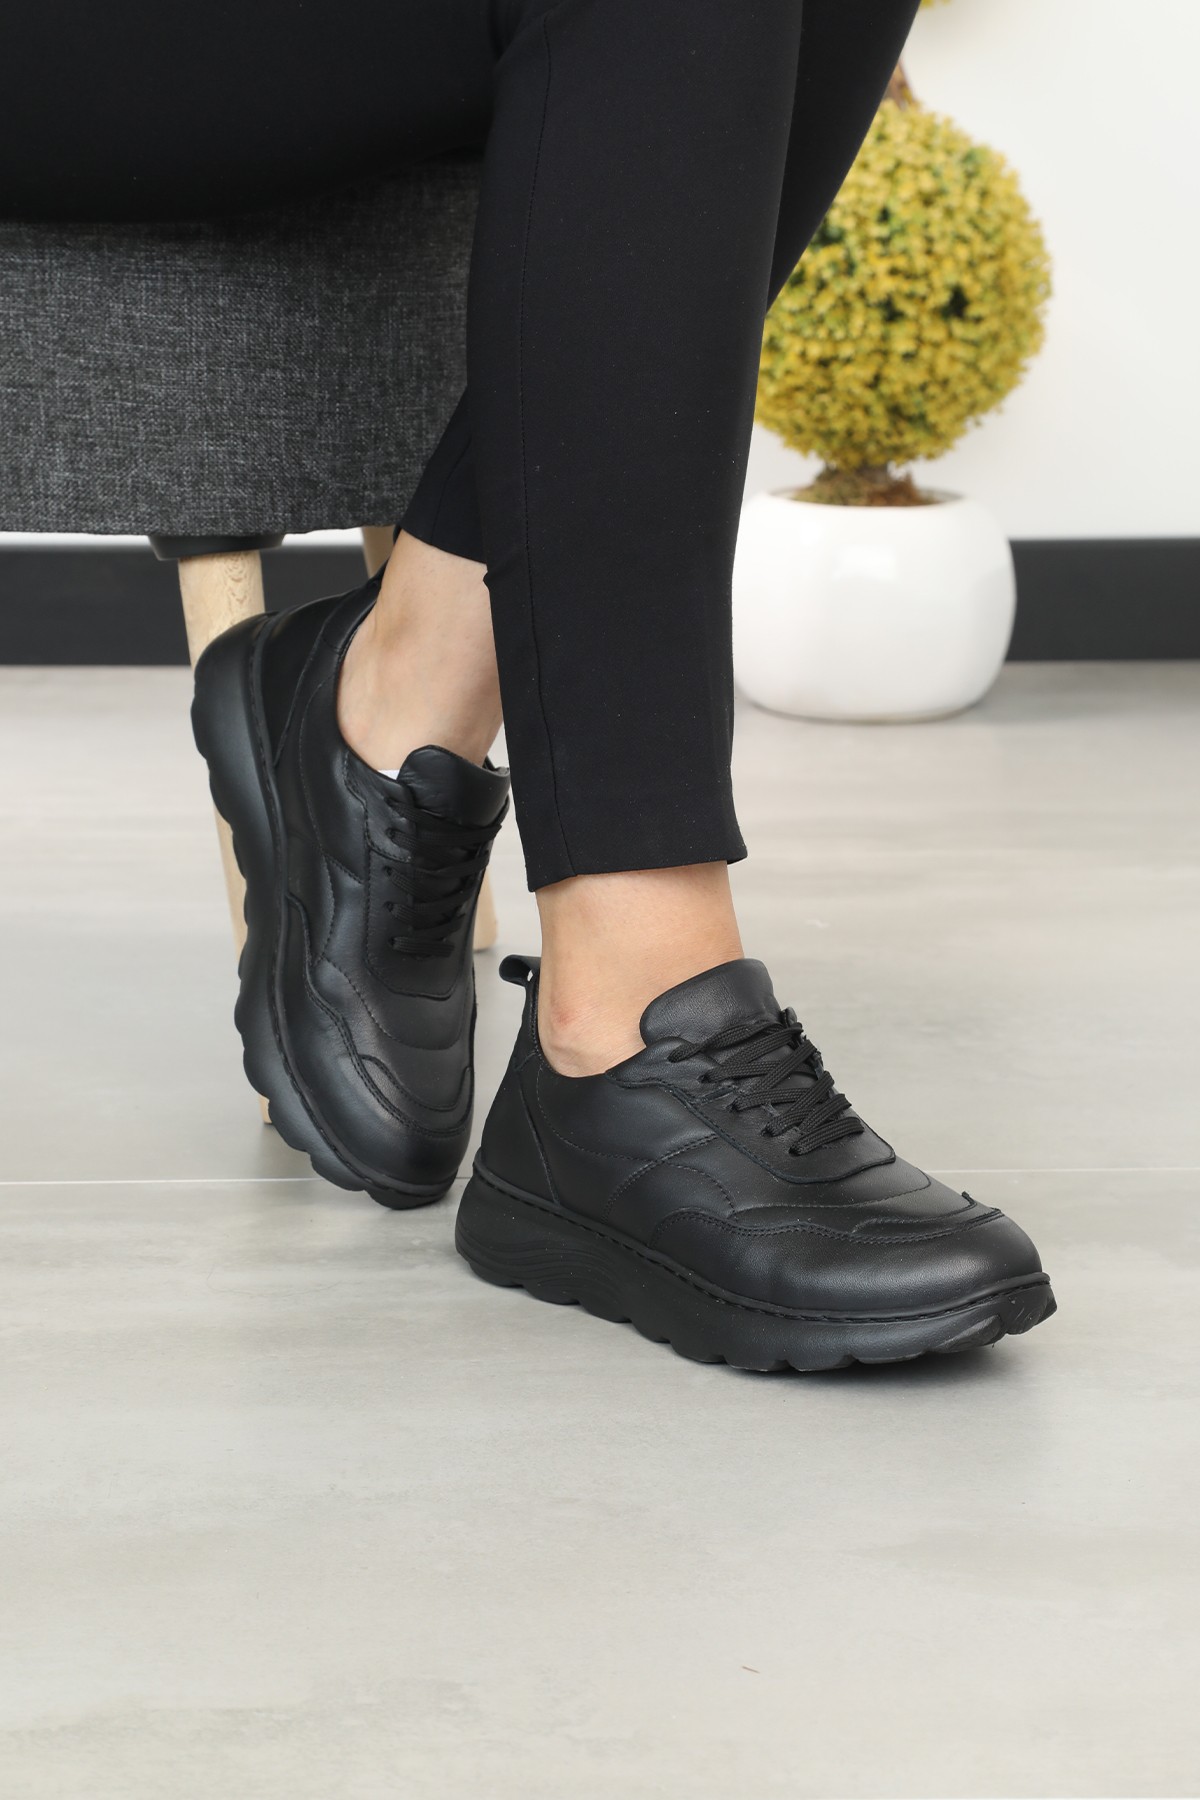 Cooliza Hakiki Deri Renkli Bağcıklı Günlük Rahat Kadın Yürüyüş Spor Ayakkabı - Siyah